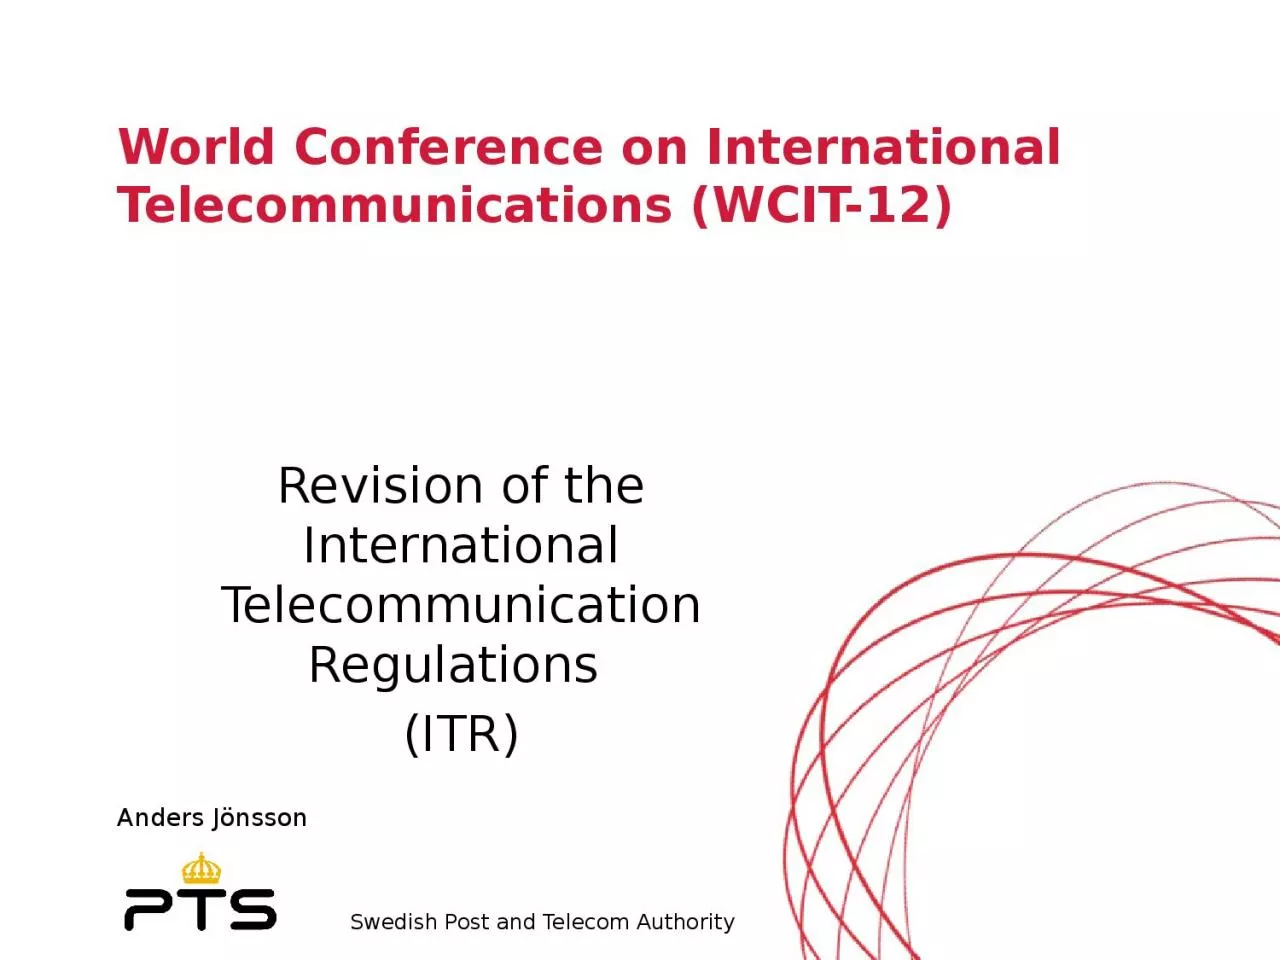 World Conference on International Telecommunications (WCIT-12